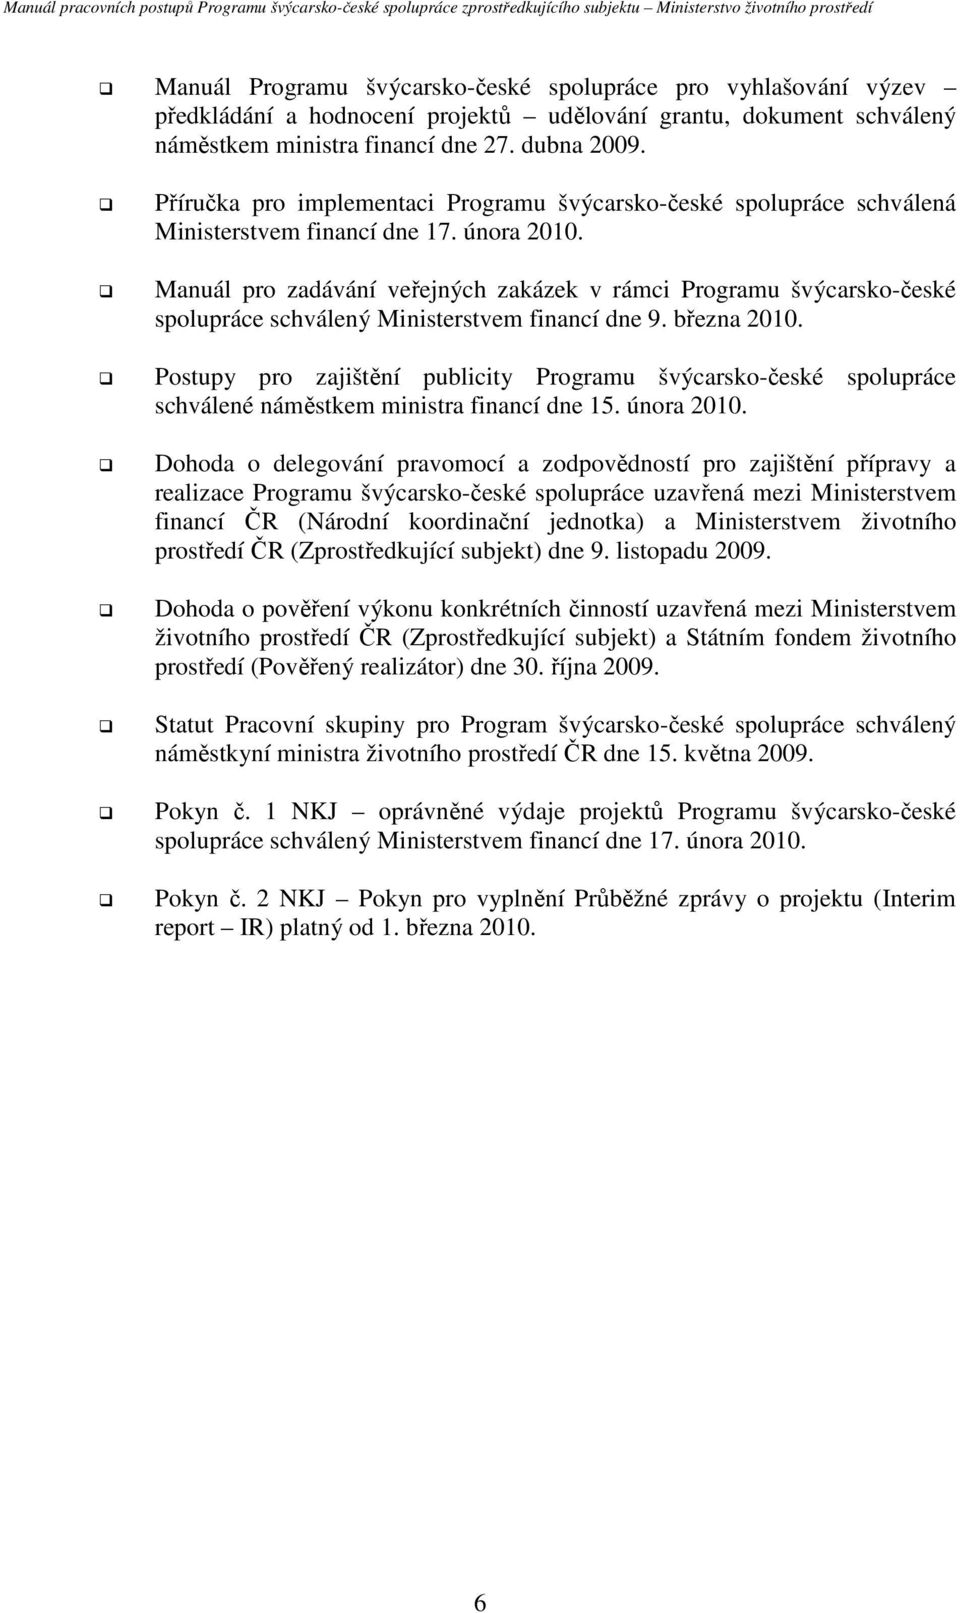 Manuál pro zadávání veřejných zakázek v rámci Programu švýcarsko-české spolupráce schválený Ministerstvem financí dne 9. března 2010.